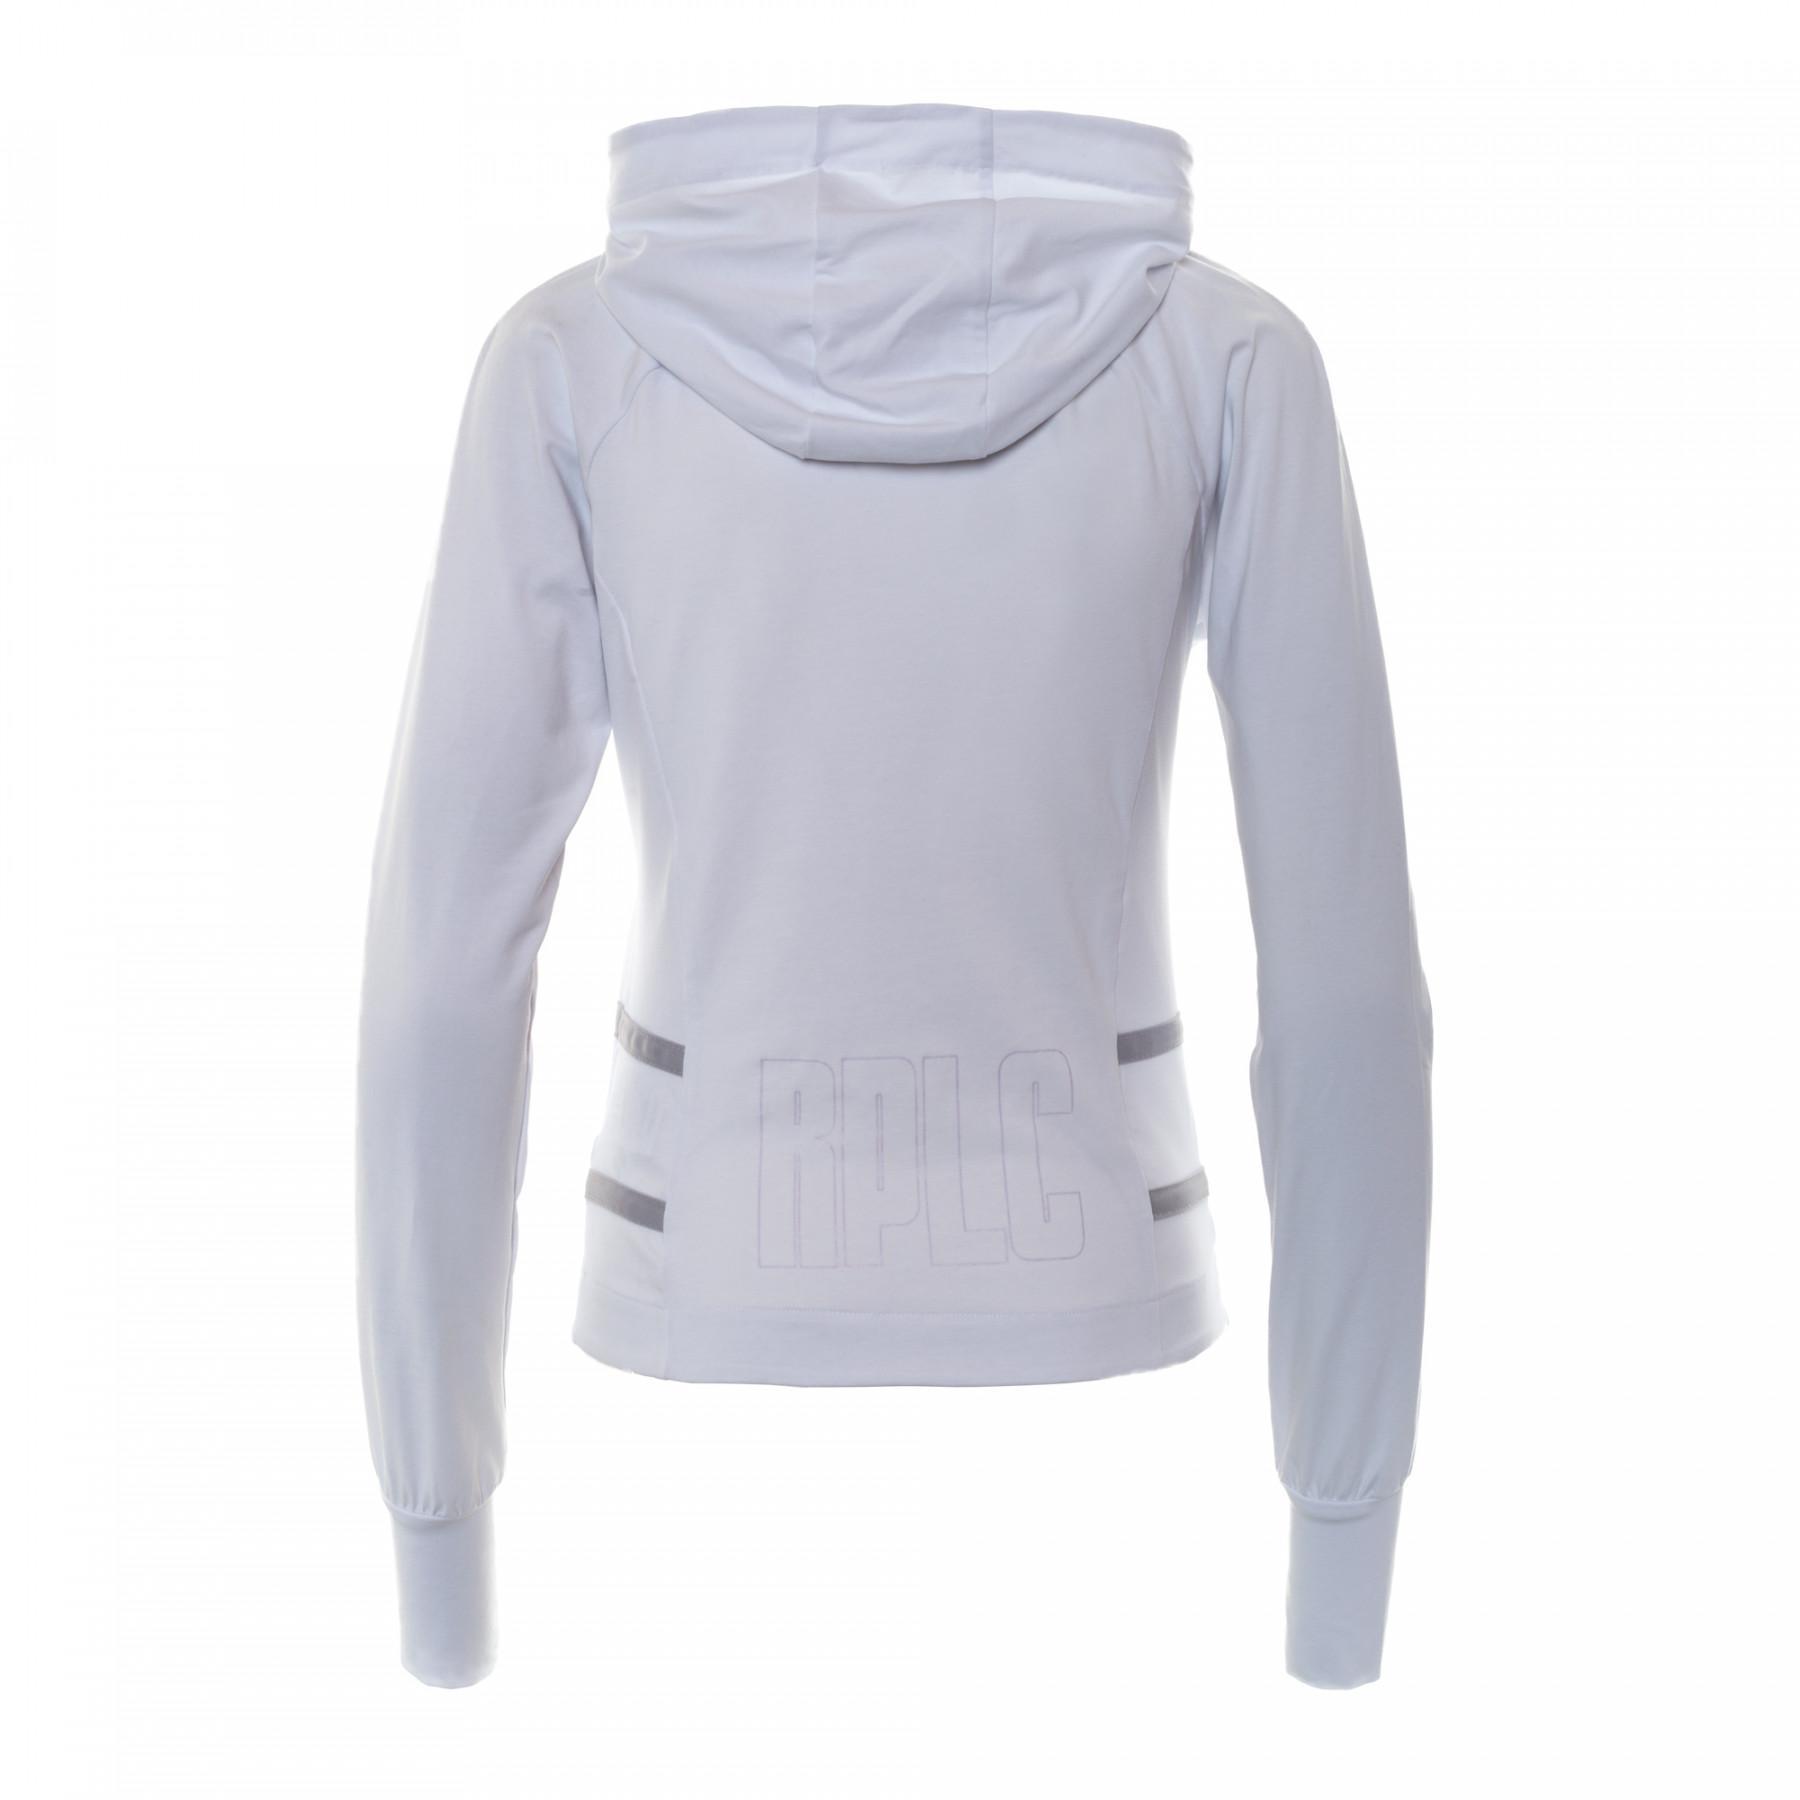 Damen-Sweatshirt Errea sport fusion full zip ad